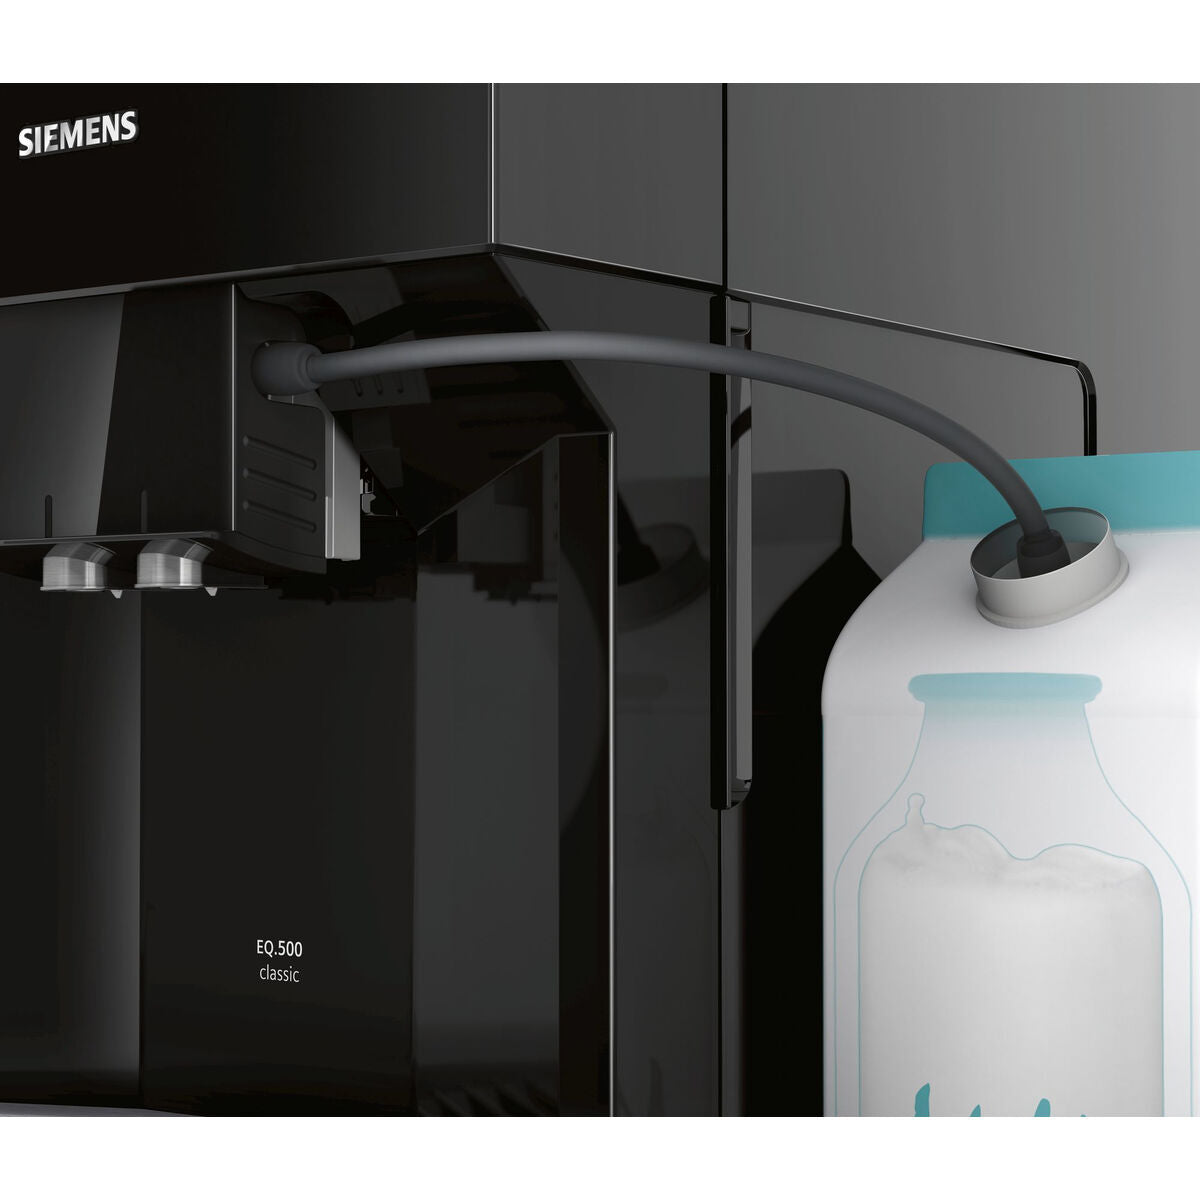 Superautomatische Kaffeemaschine Siemens AG TP501R09 Schwarz noir 1500 W 15 bar 1,7 L